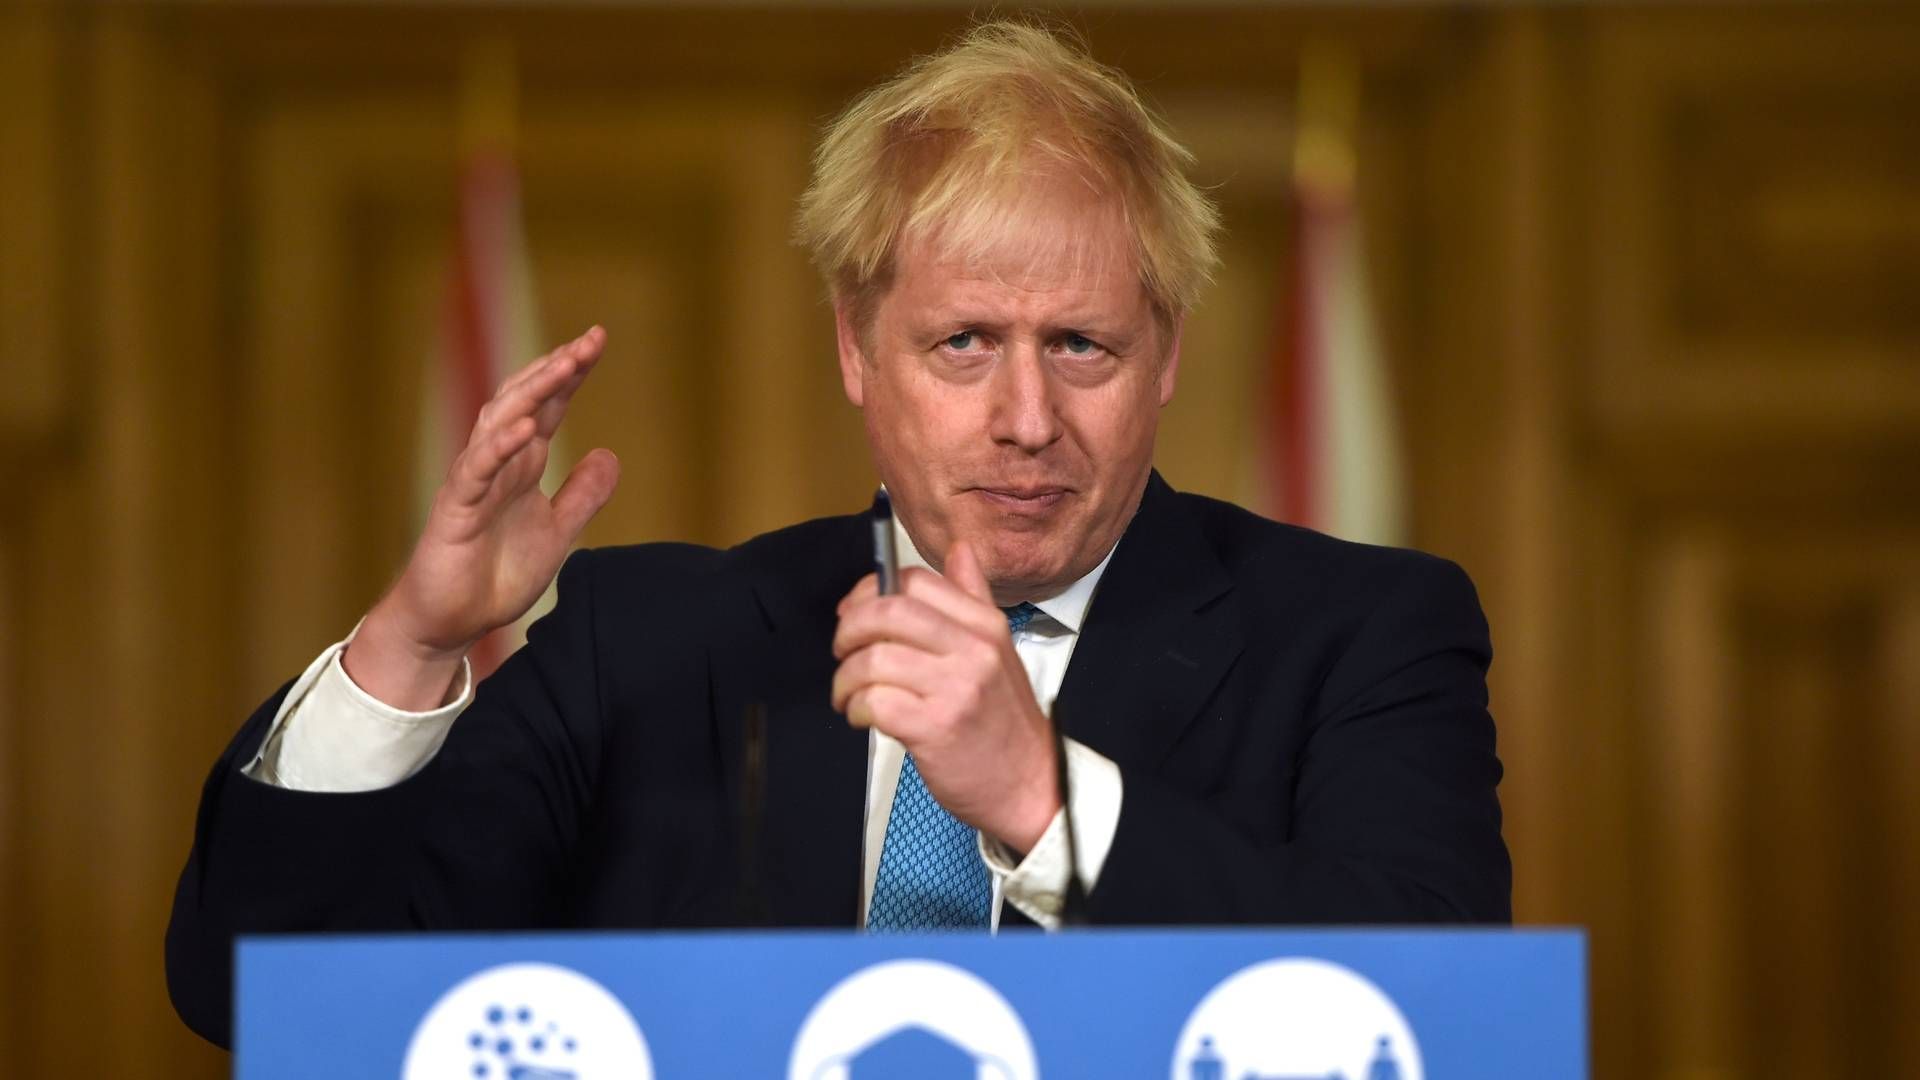 "Storbritannien tror fortsat på, at der ikke er noget grundlag for at genoptage forhandlingerne, medmindre der sker en fundamental ændring i EU's tilgang," lyder det i en udtalelse fra den britiske premierminister Boris Johnsons kontor. | Foto: EDDIE MULHOLLAND/AFP/Ritzau Scanpix